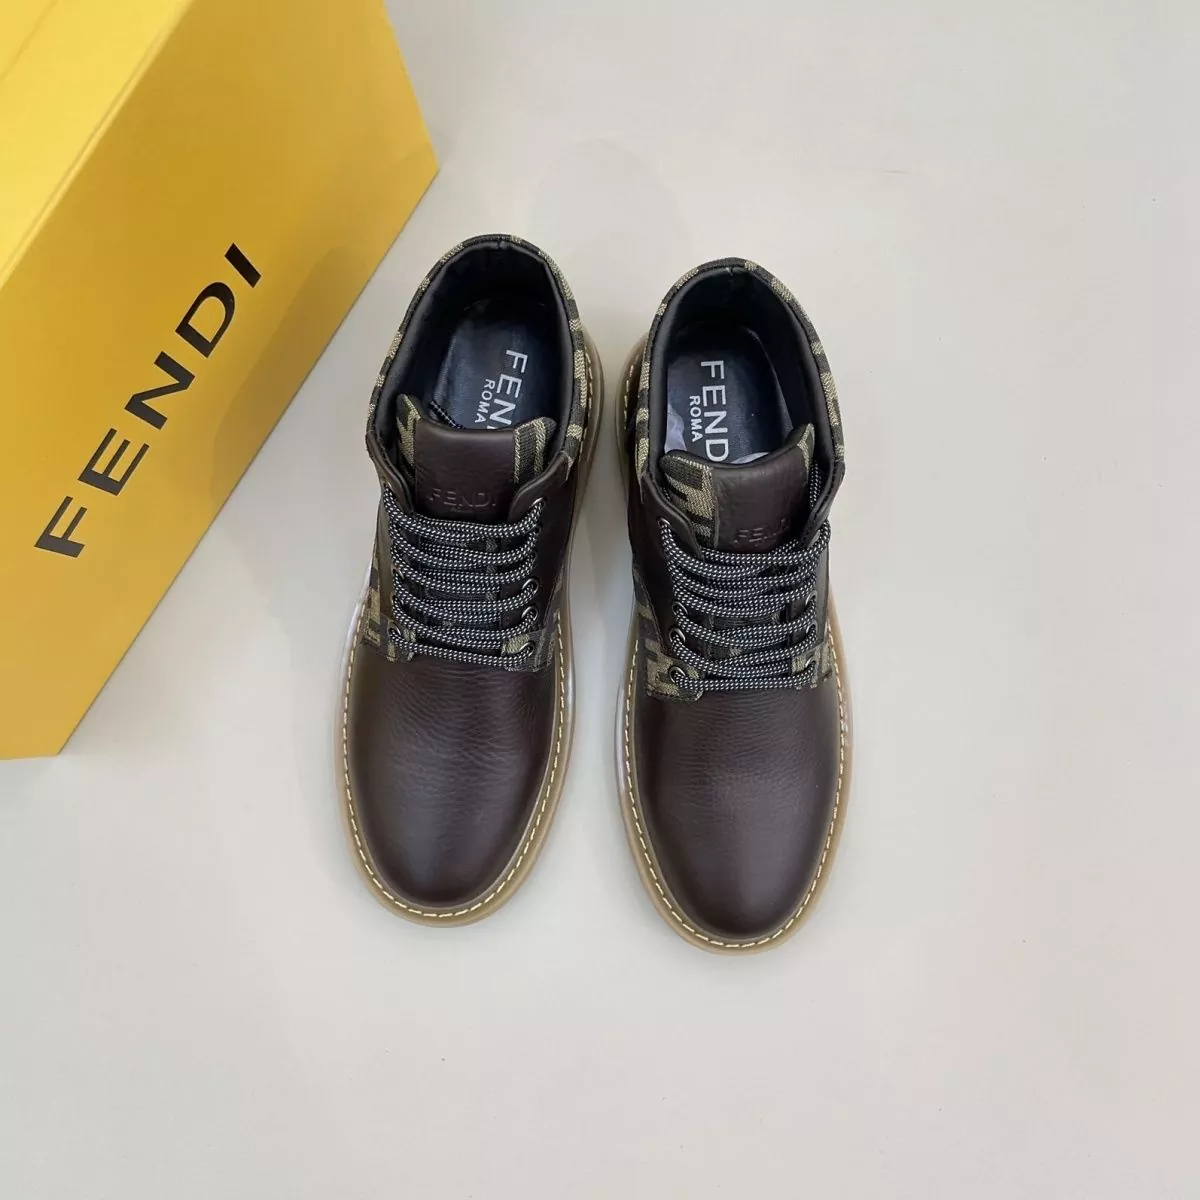 Fendi Men Shoes